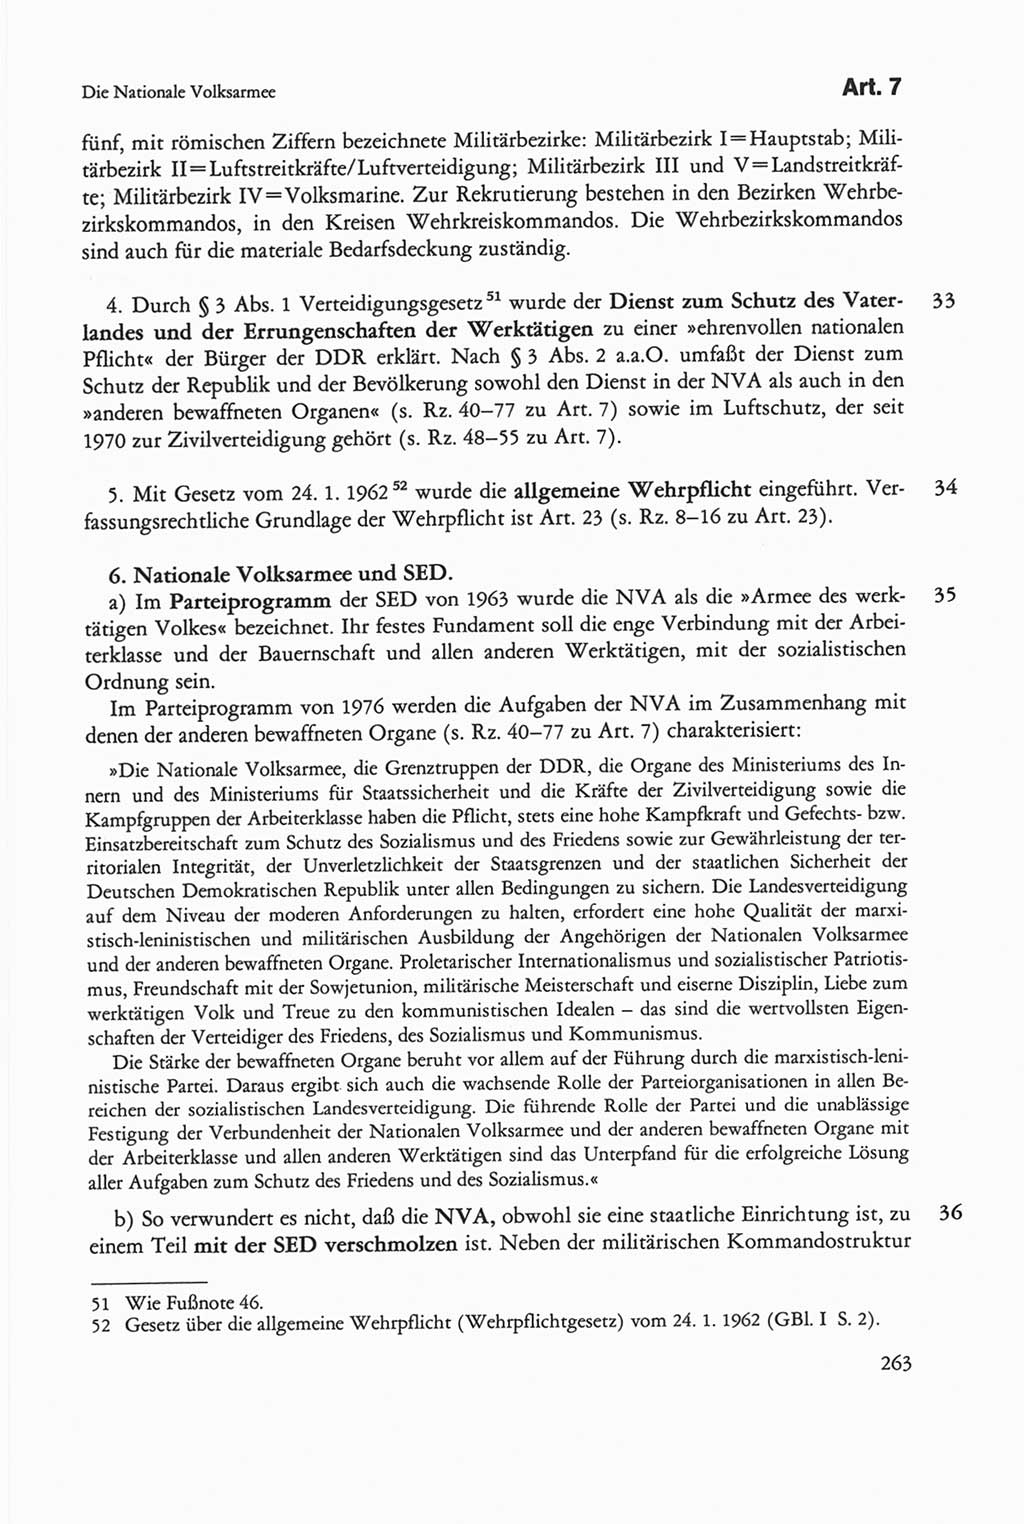 Die sozialistische Verfassung der Deutschen Demokratischen Republik (DDR), Kommentar 1982, Seite 263 (Soz. Verf. DDR Komm. 1982, S. 263)